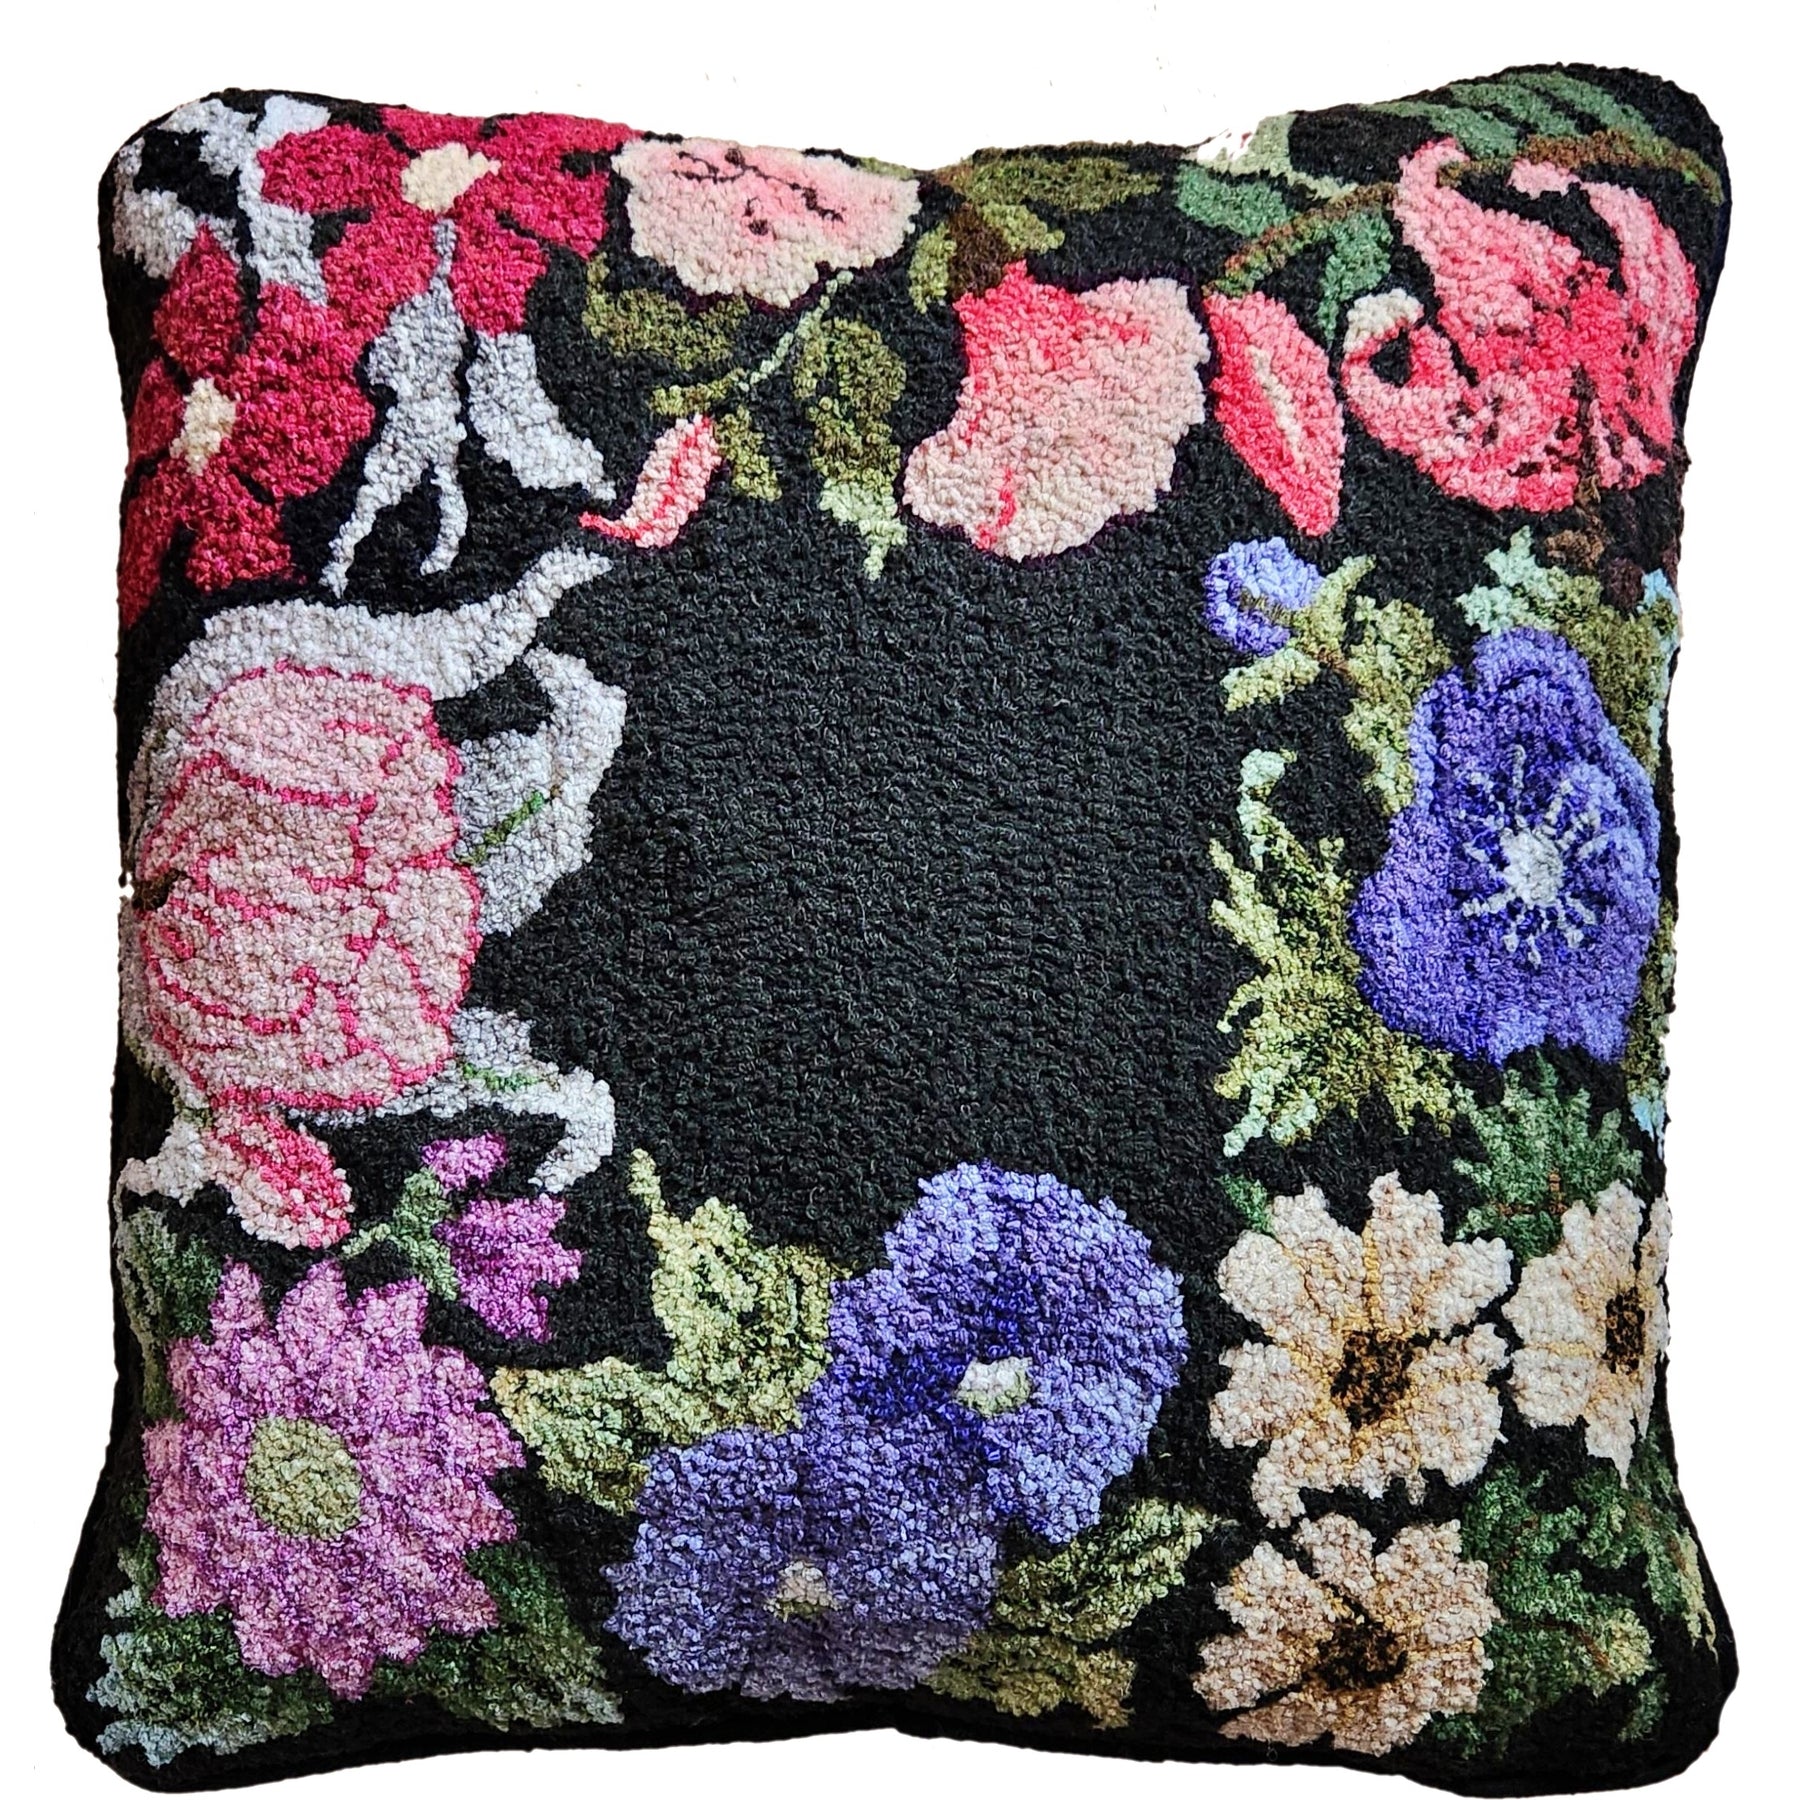 Floral Sampler, rug hooked by Kathie Yancey